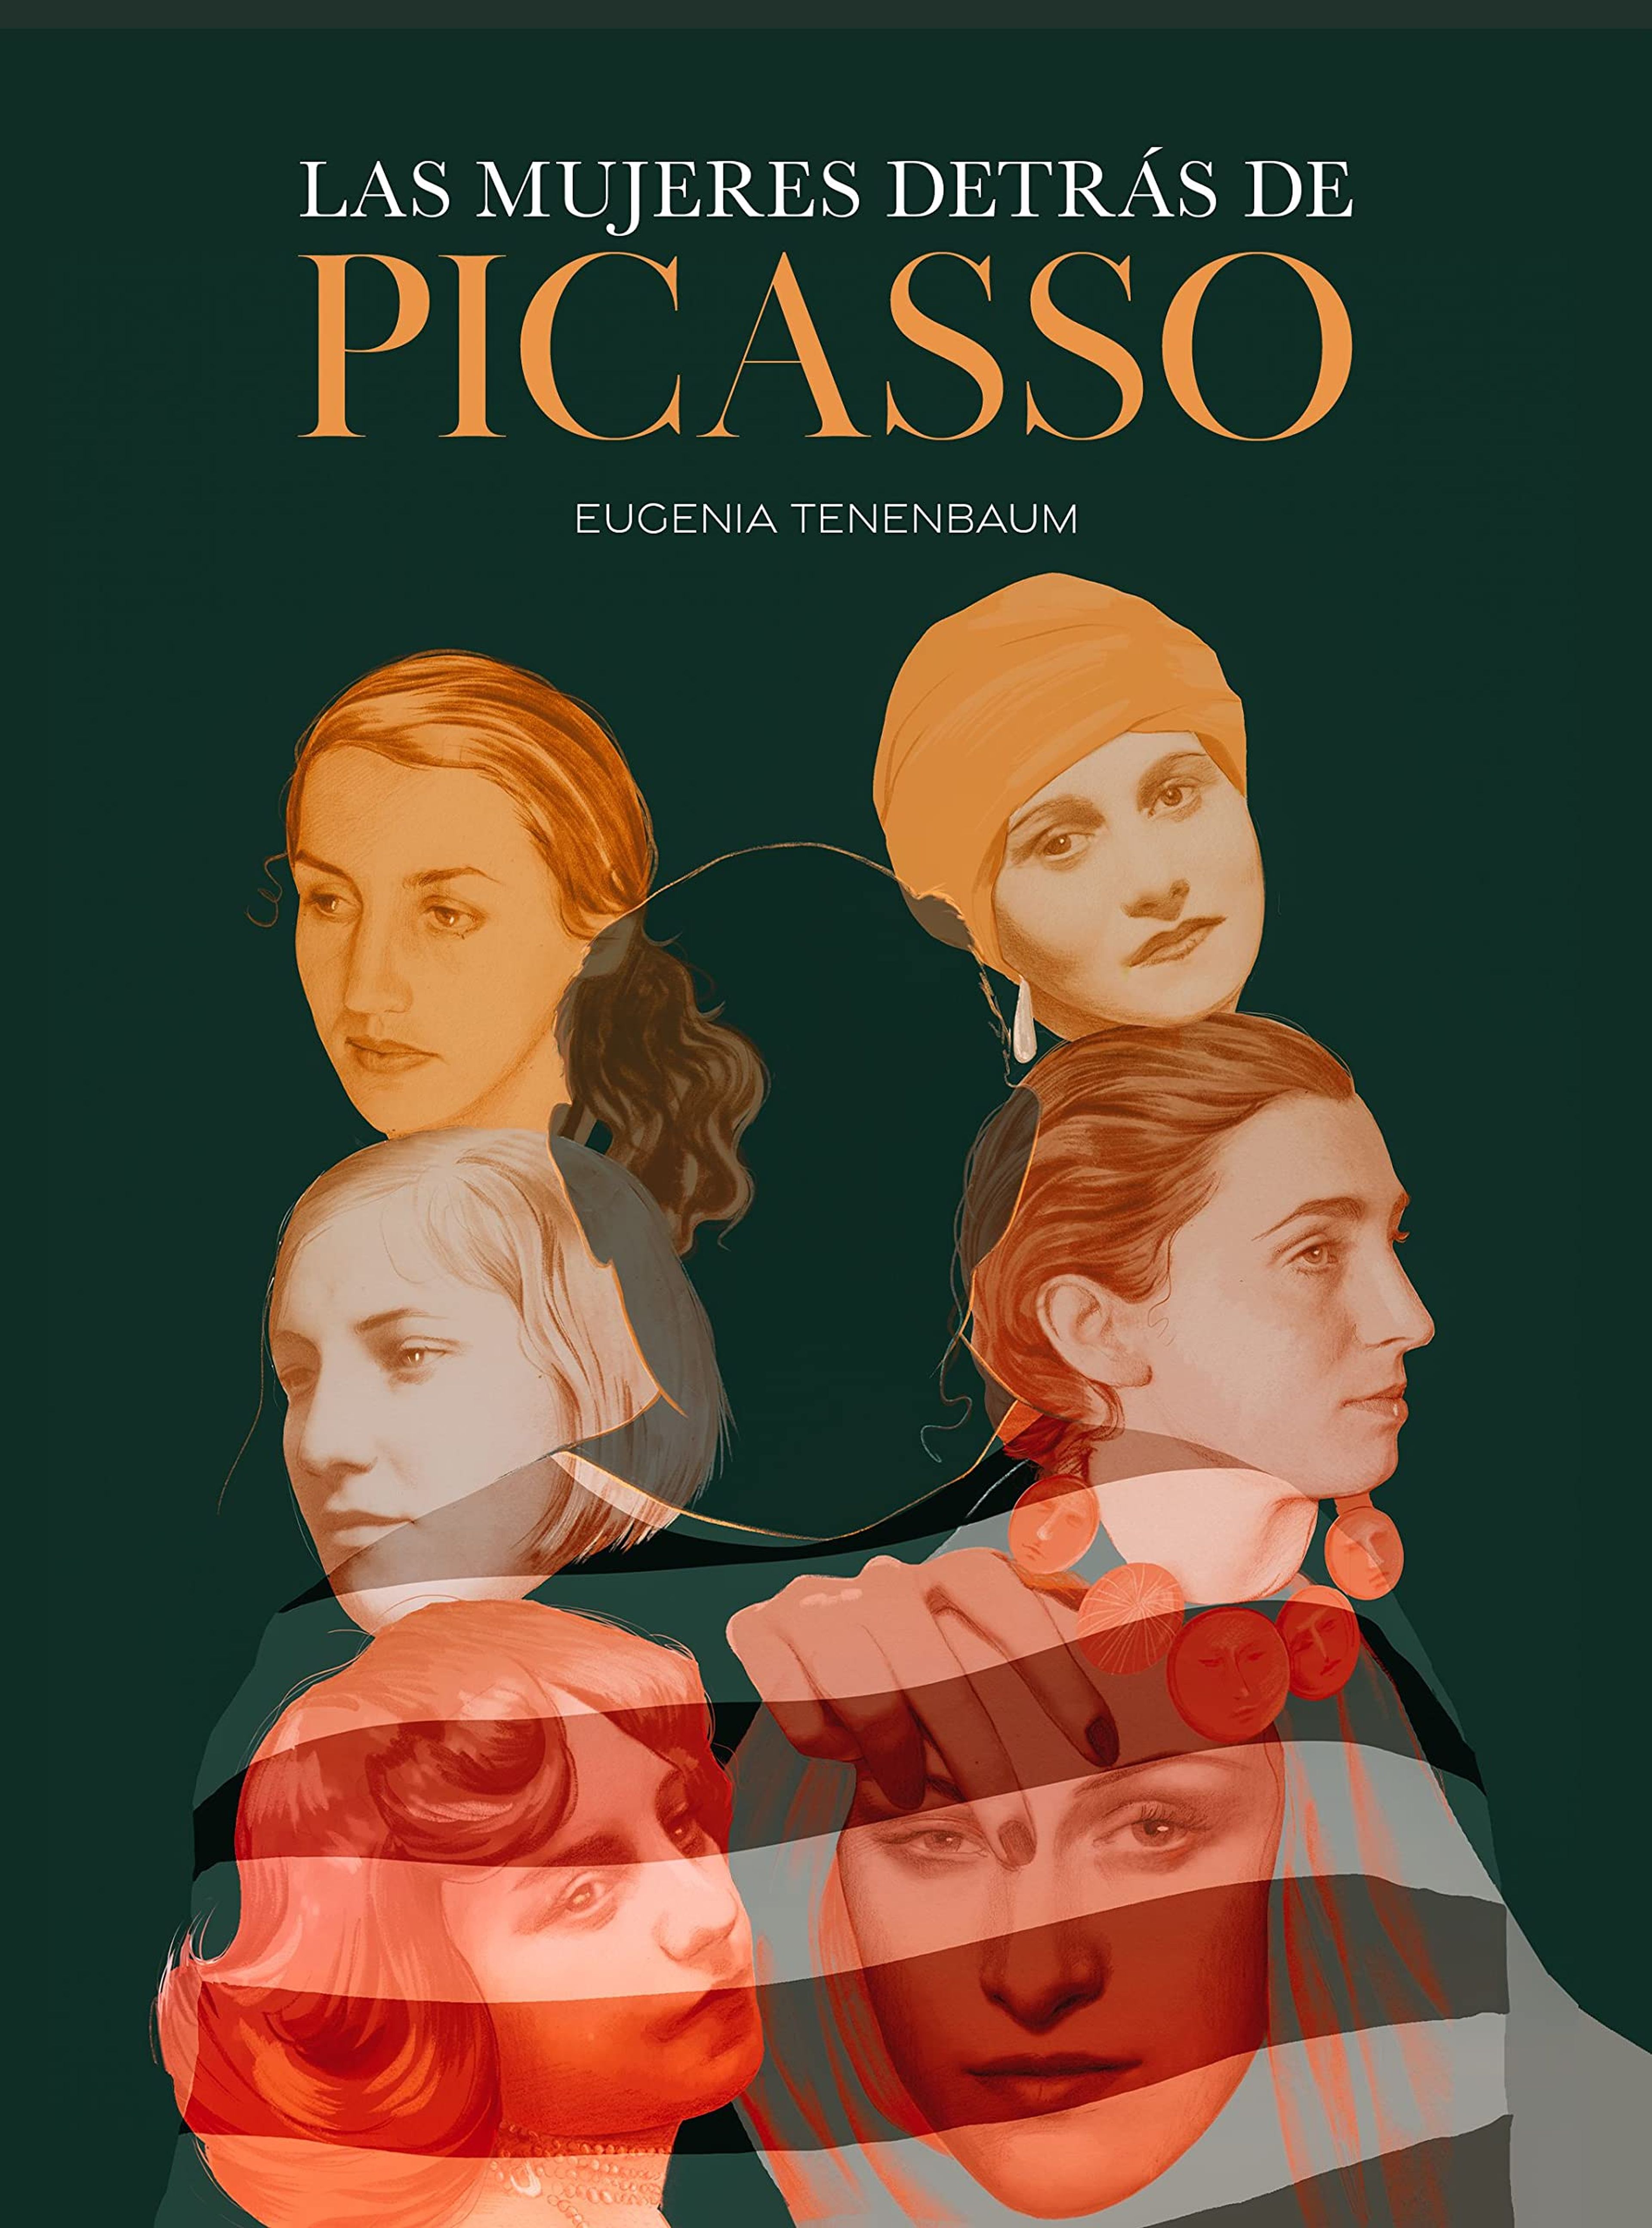 Las mujeres detrás de Picasso, de Eugenia Tenenbaum.